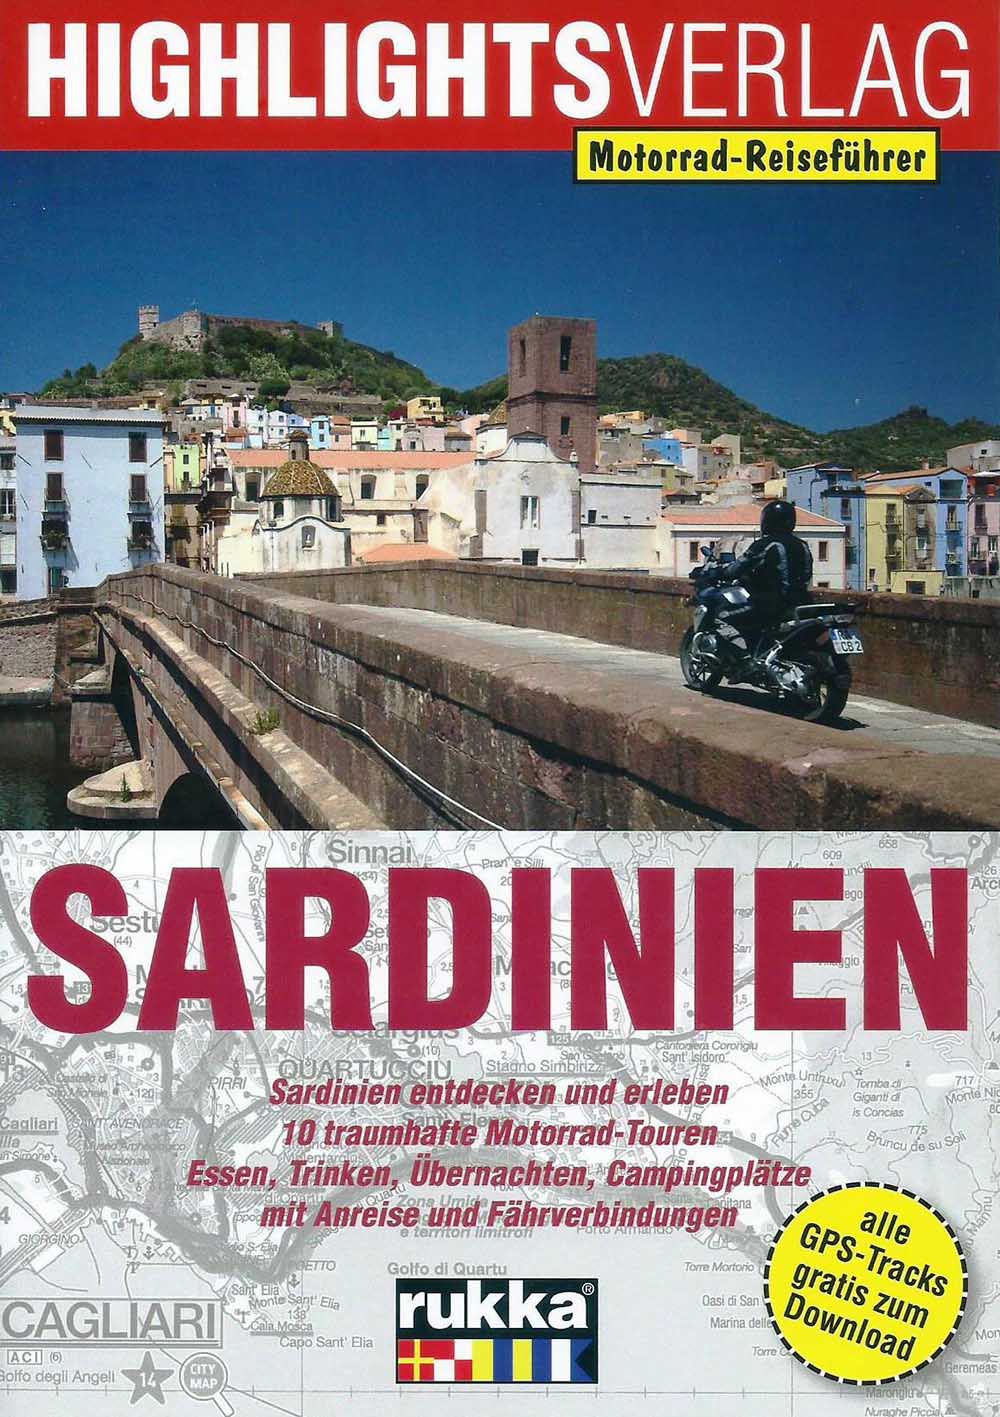 Sardinien Cover1